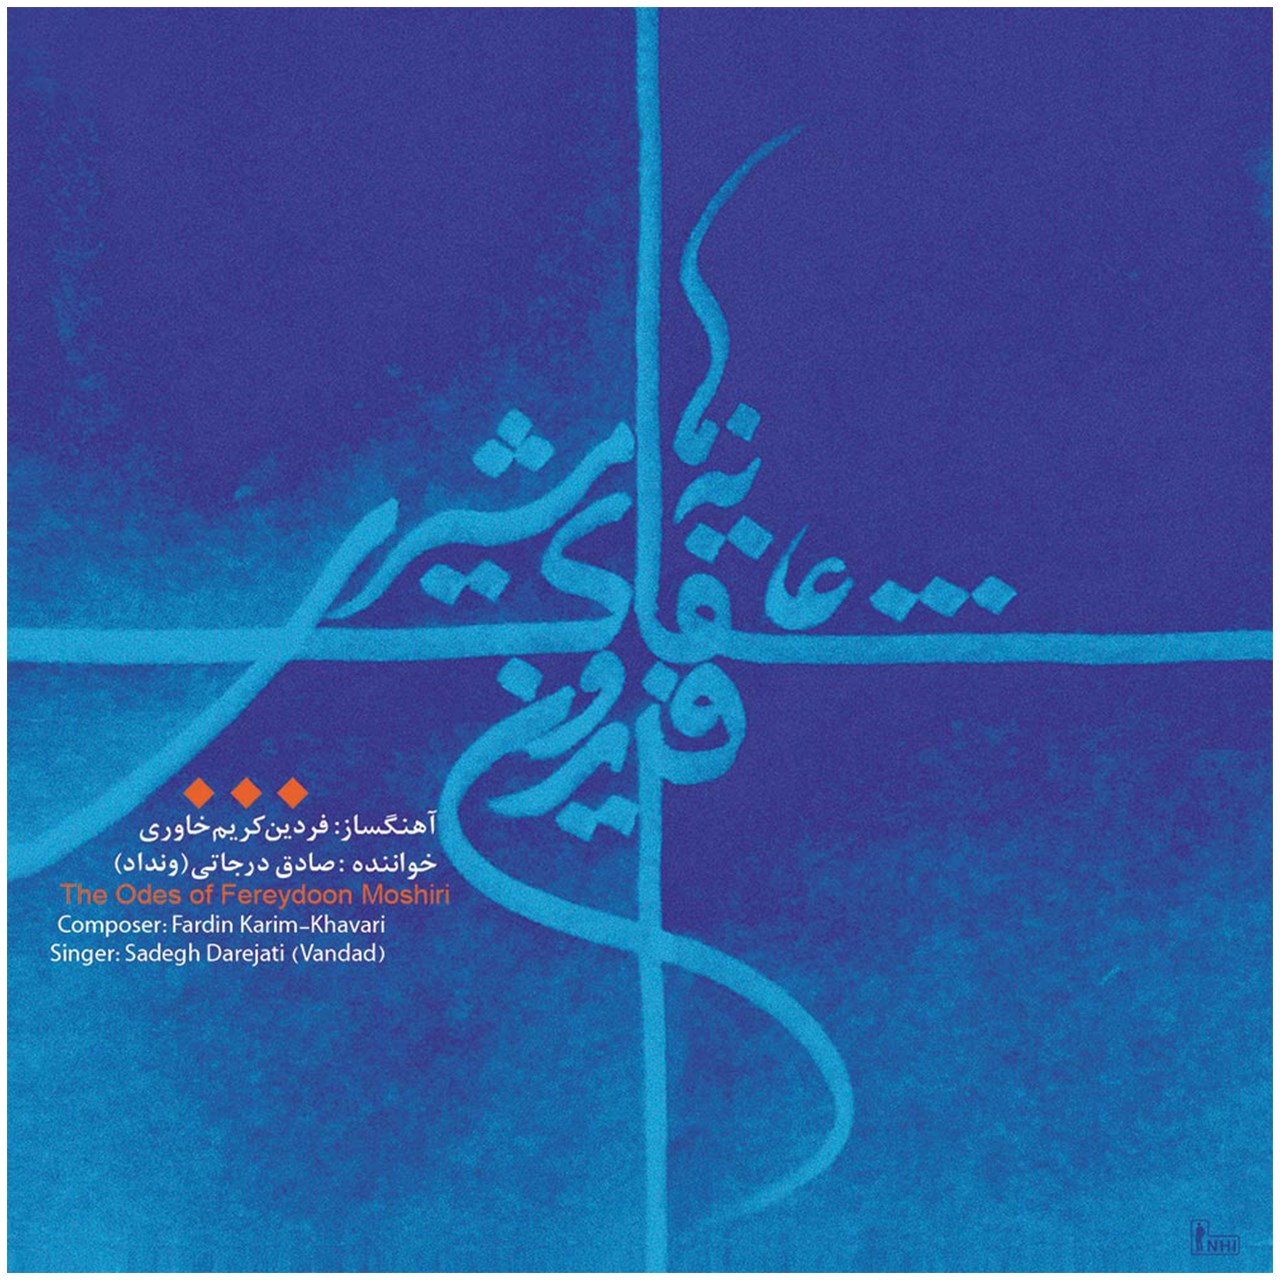 آلبوم موسیقی عاشقانه های فریدون مشیری اثر فردین کریم خاوری